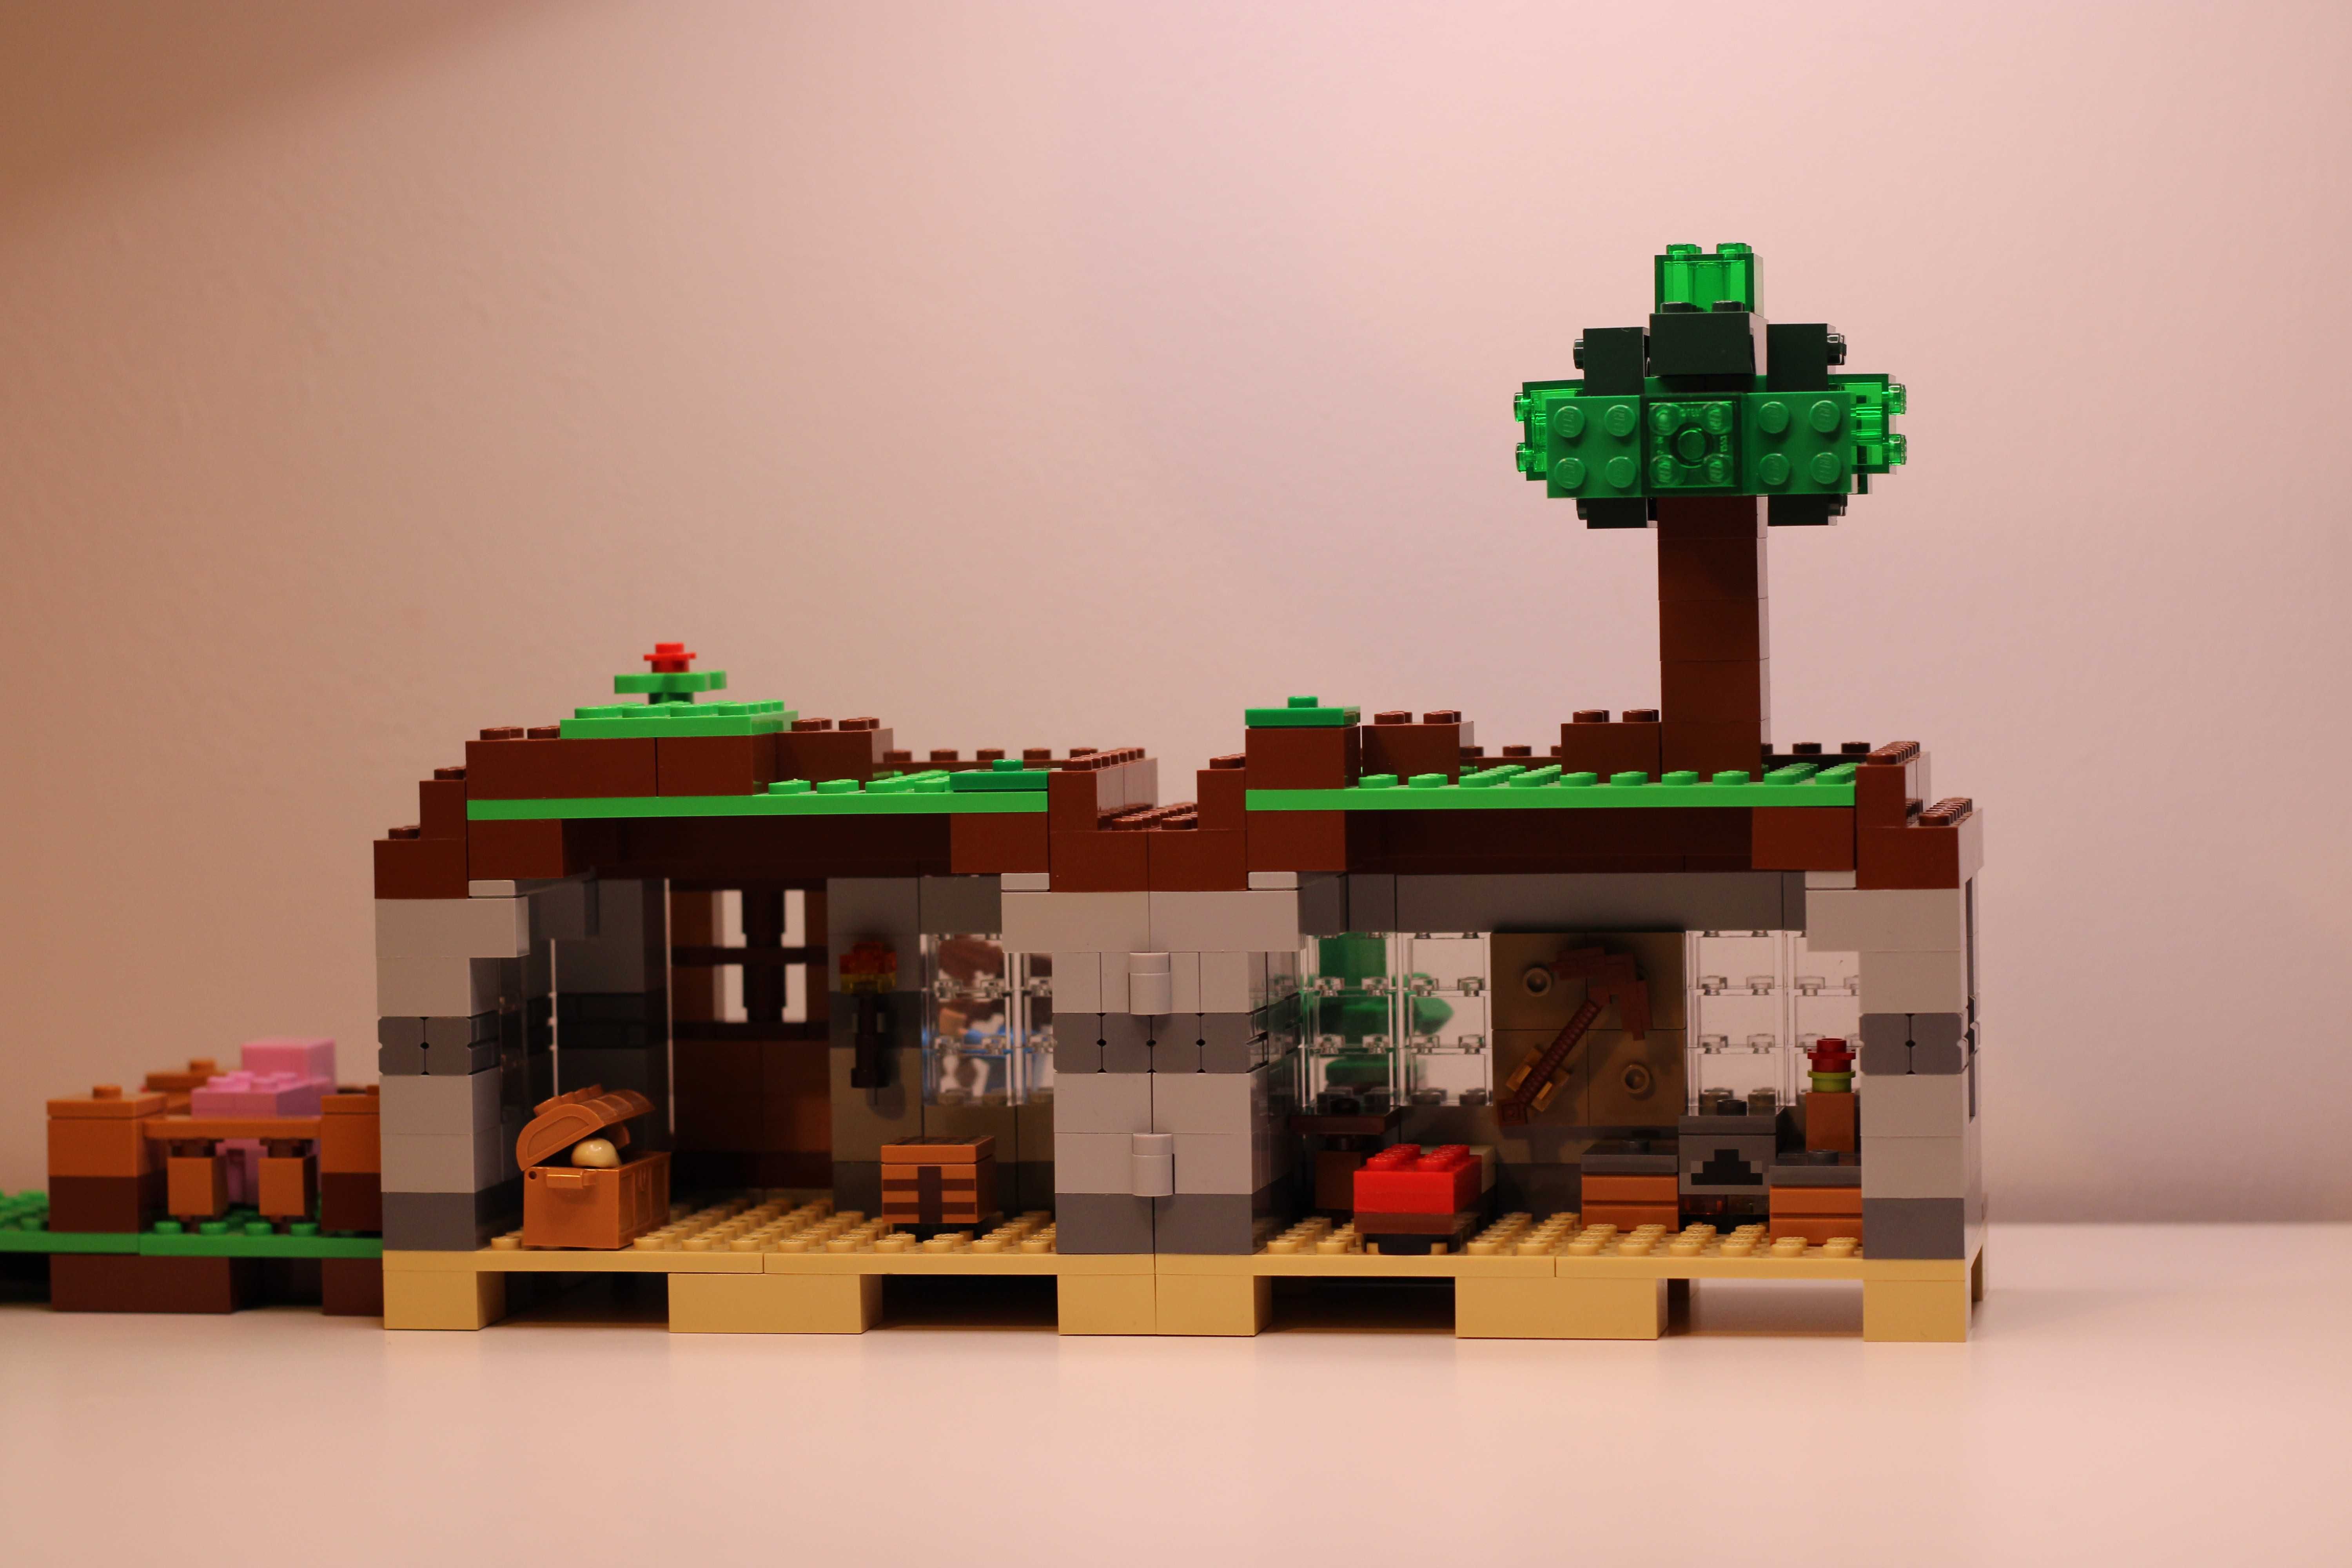 Zestaw LEGO® 21115 Minecraft - Pierwsza Noc używany